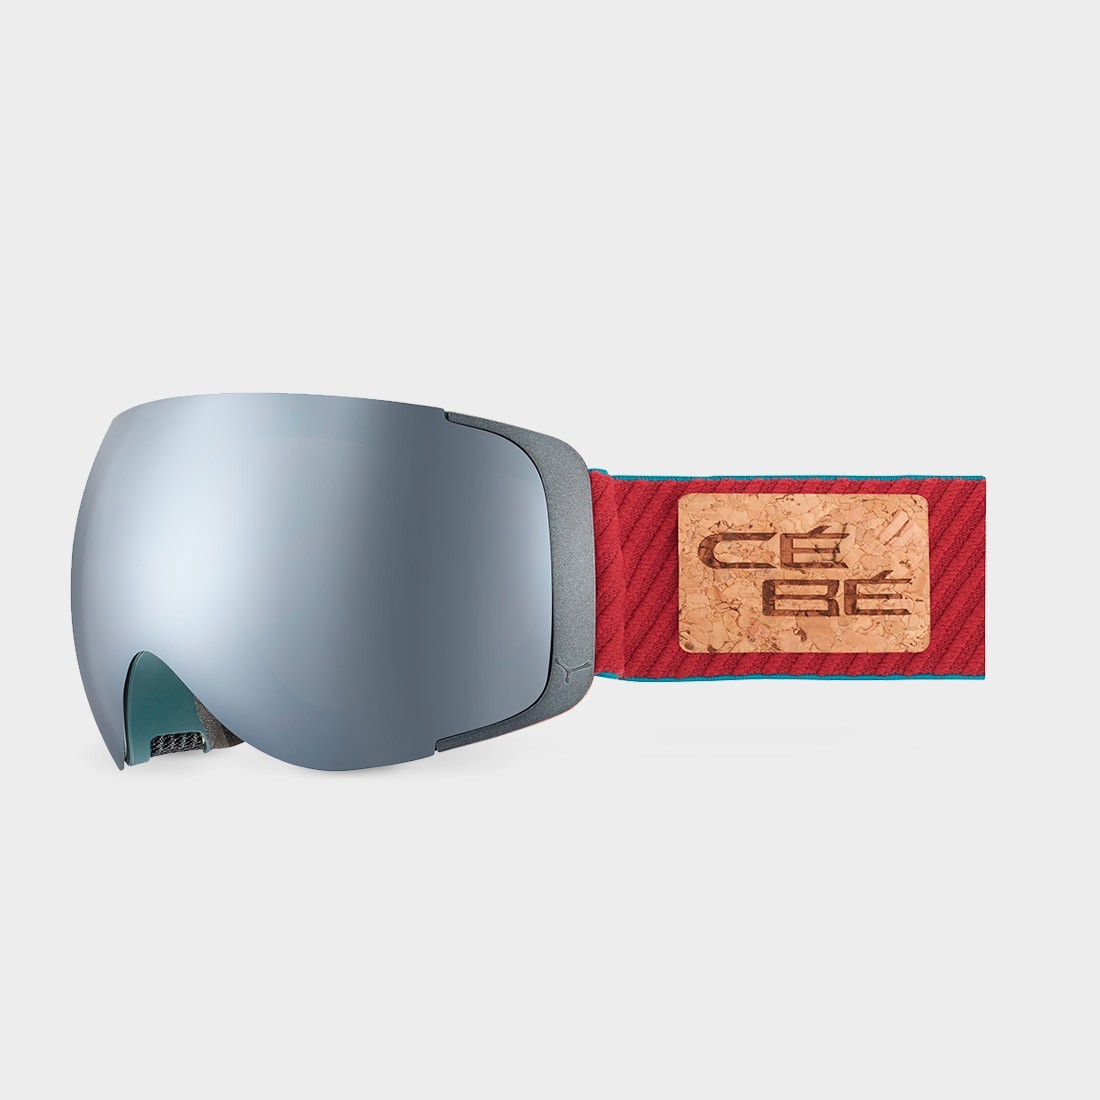 cebe-exo-otg-masks-magnetic-screen-gray-red